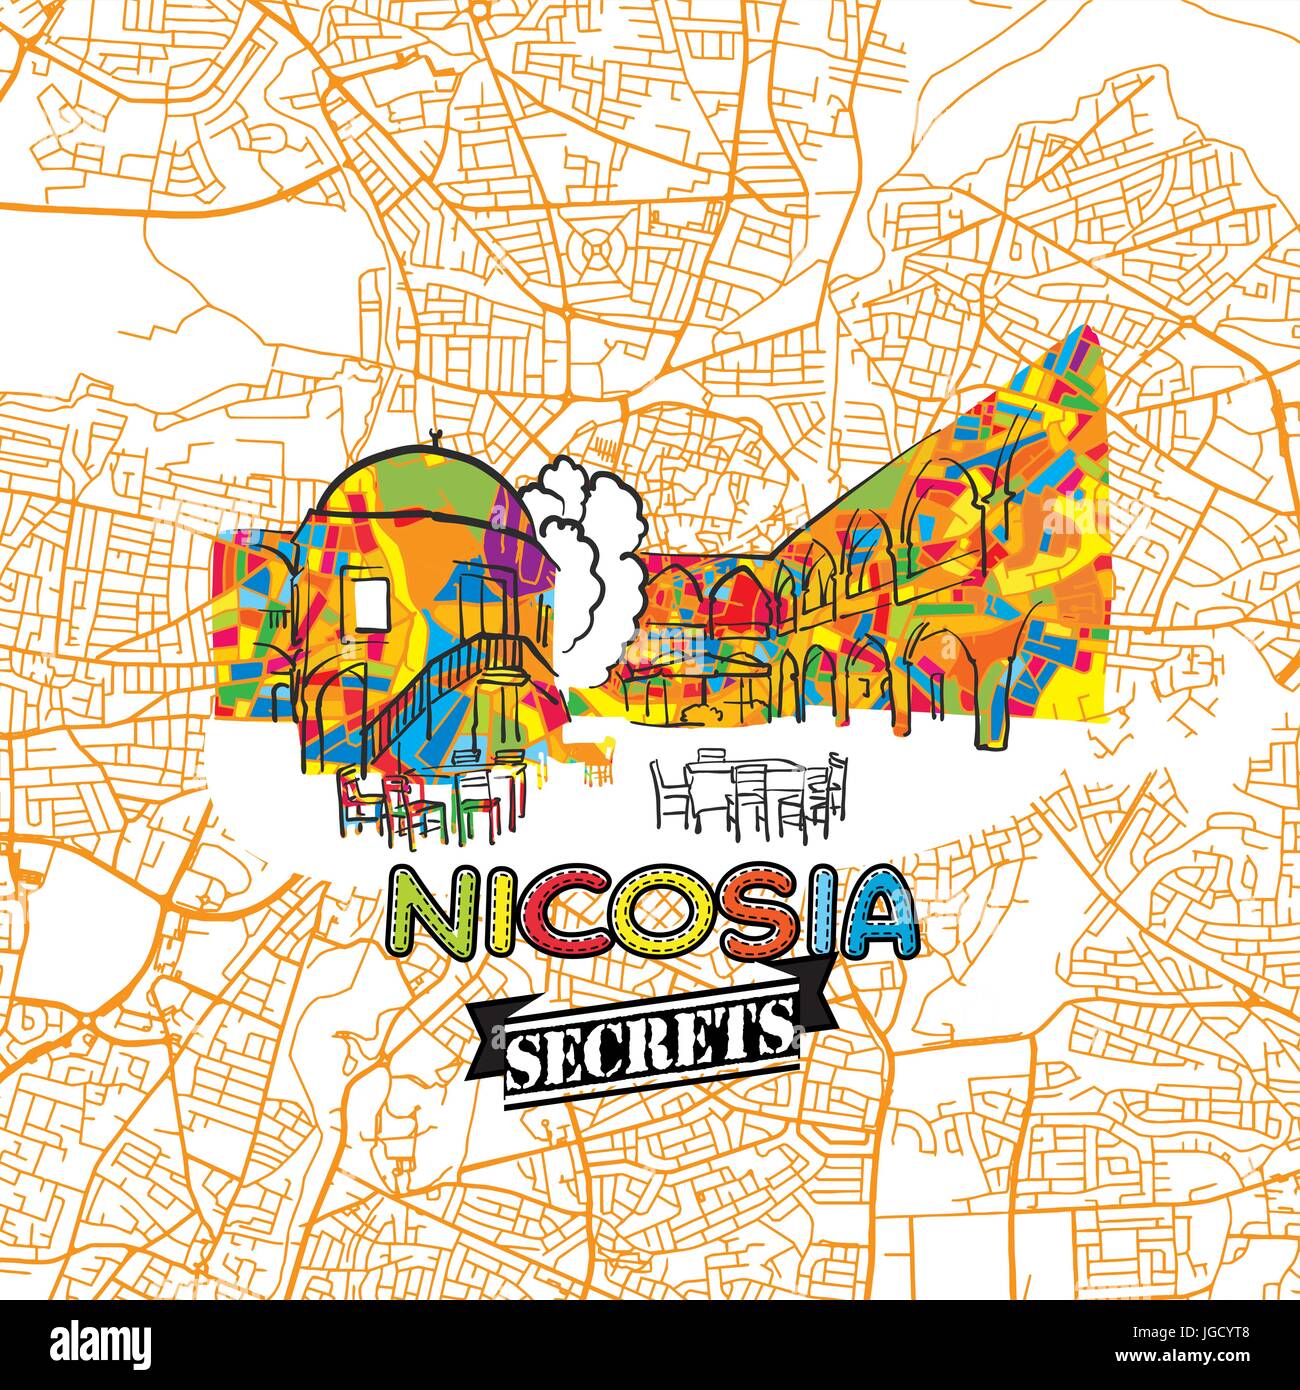 Voyage Nicosie Art Secrets Site pour la cartographie des experts et des guides de voyage. Le logo de la ville à la main, typo de badge et dessinés à la main sur le dessus de l'image vectorielle sont regroupés un Illustration de Vecteur